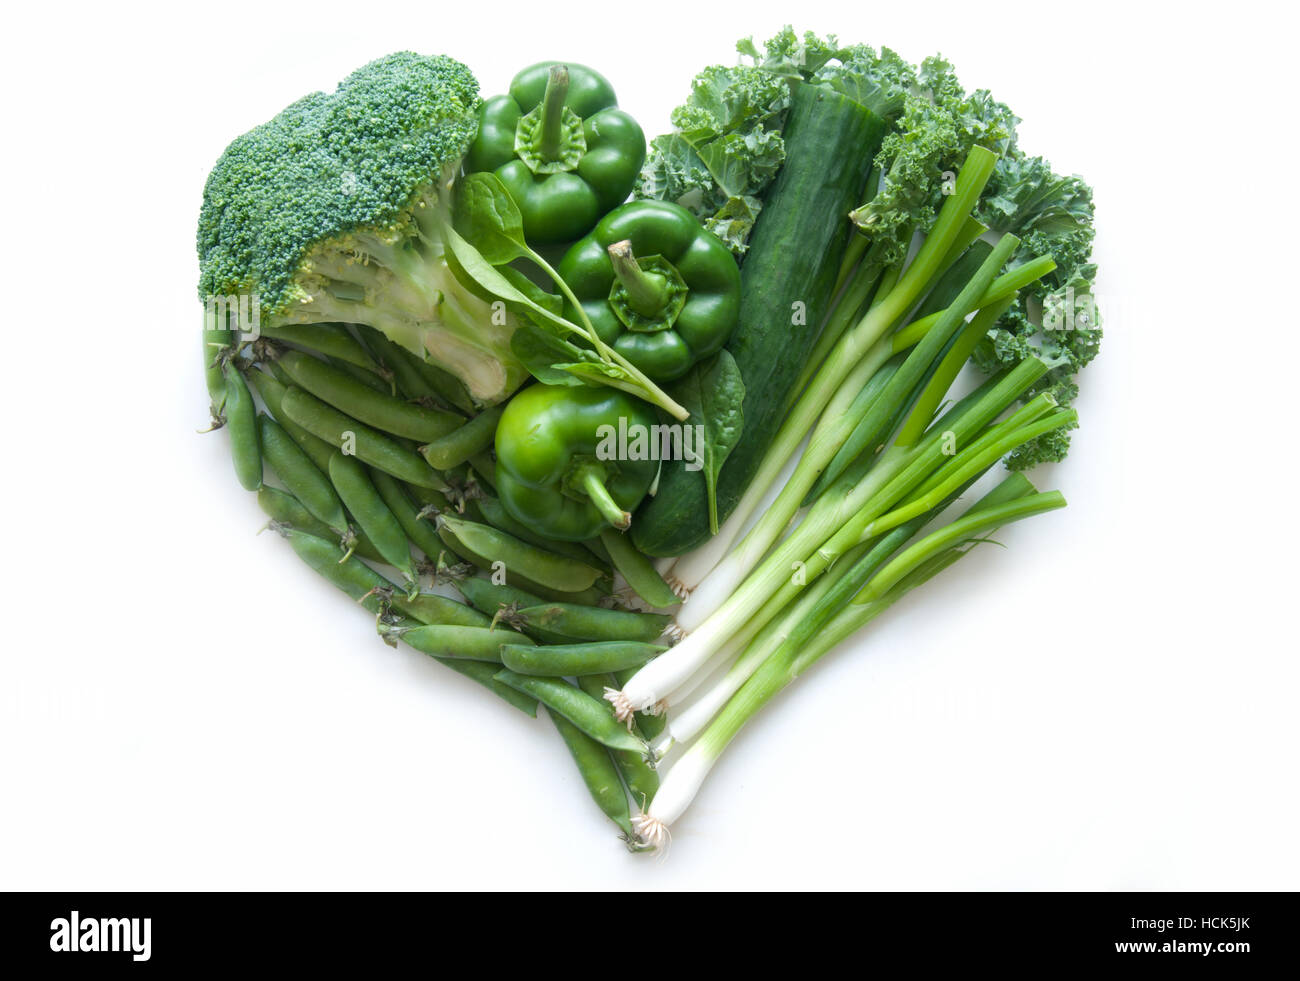 Sélection de légumes verts et de feuilles dont kale et le brocoli en forme de cœur sur un fond blanc Banque D'Images